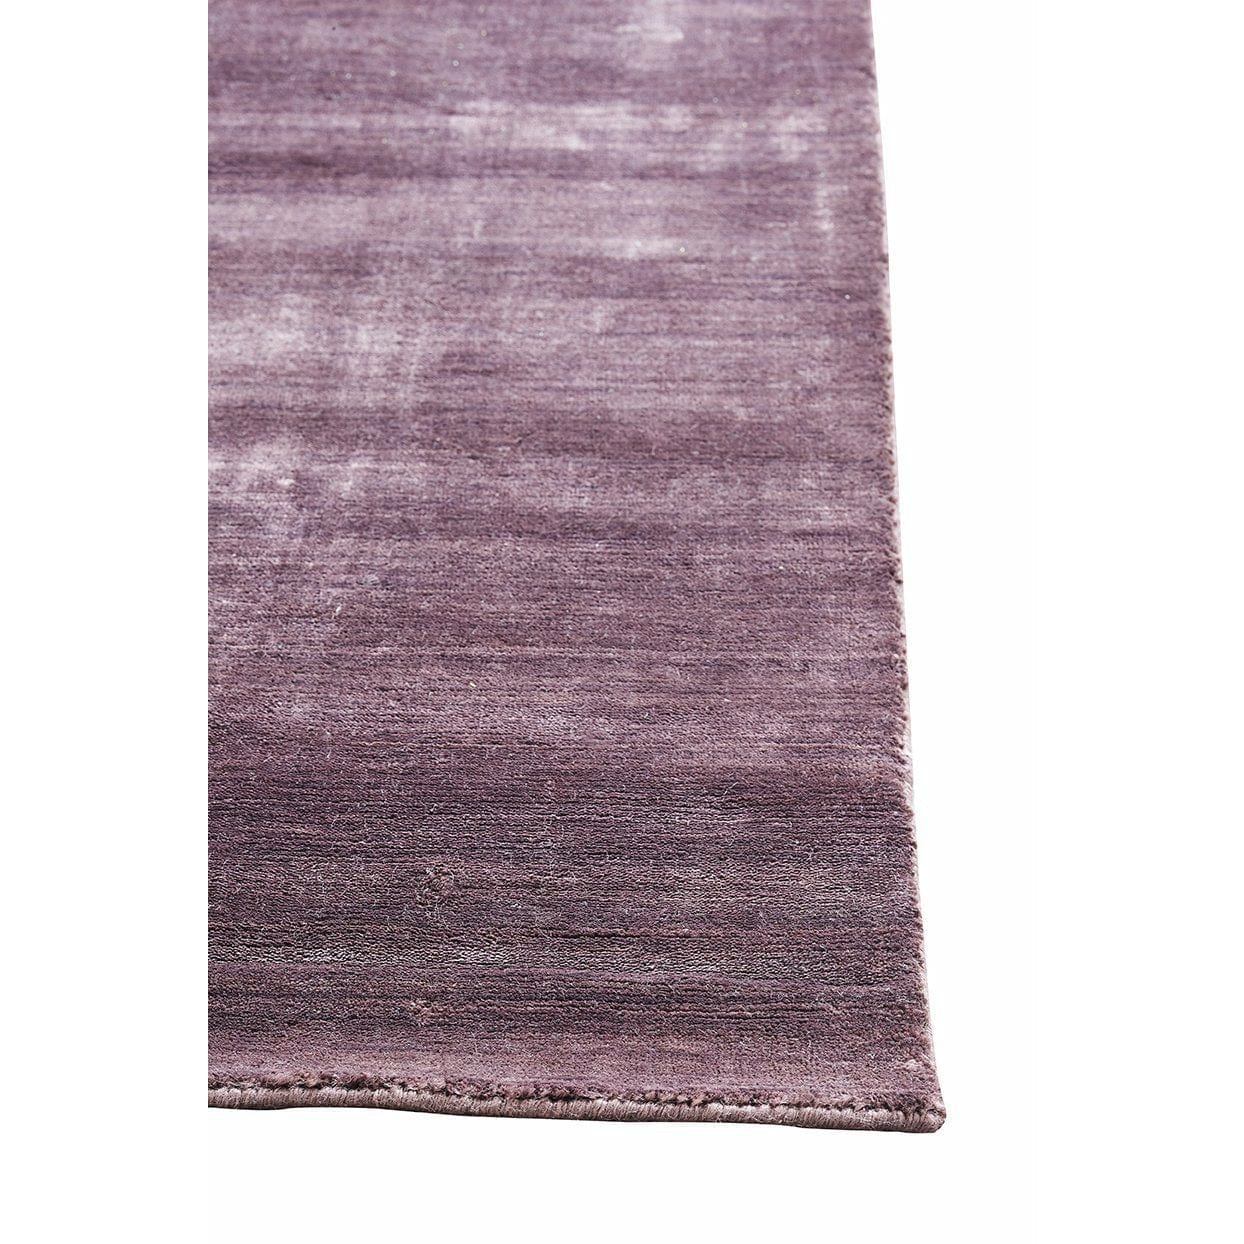 Massimo Bambus tæppe blomme, 200x300 cm